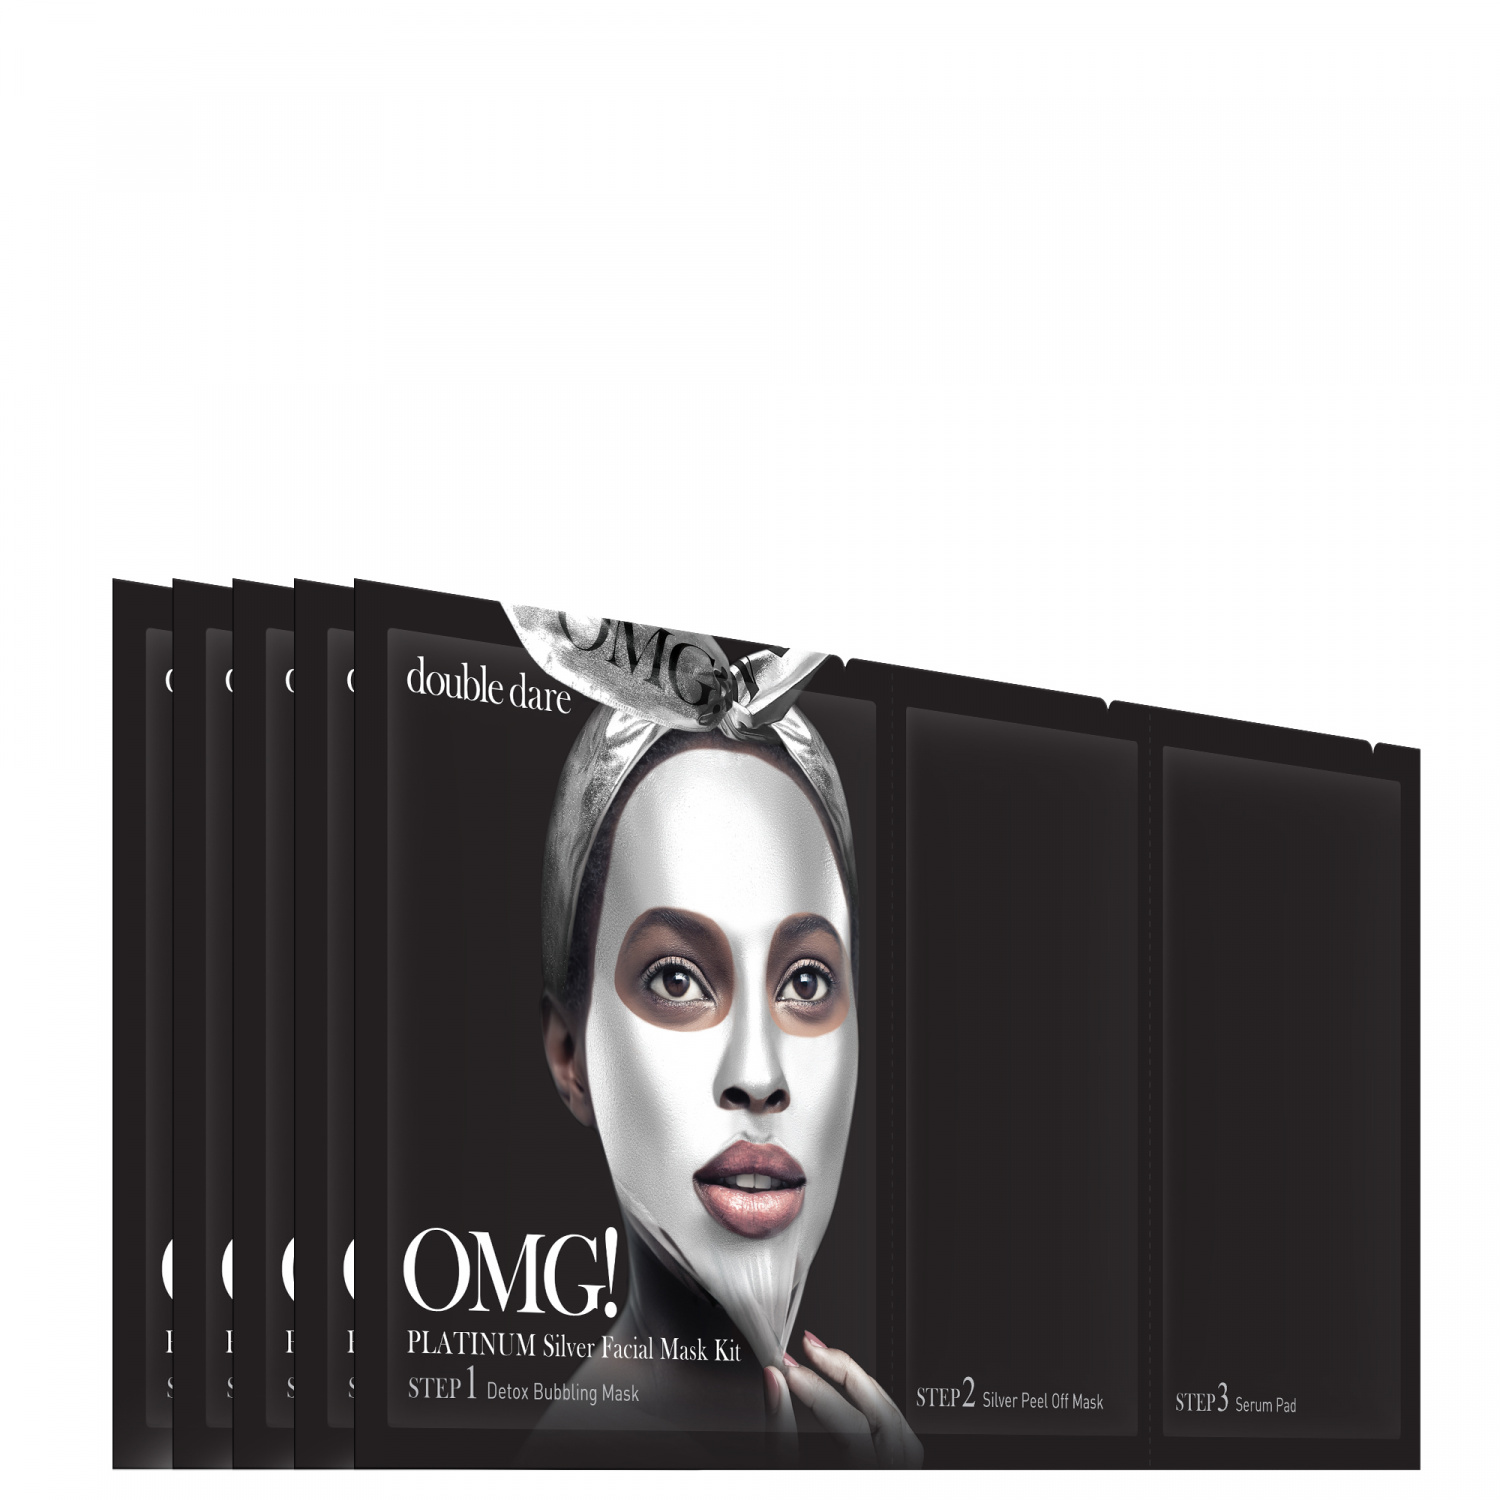 Double Dare OMG! Platinum SILVER Facial Mask Kit 5p - интернет-магазин профессиональной косметики Spadream, изображение 40738